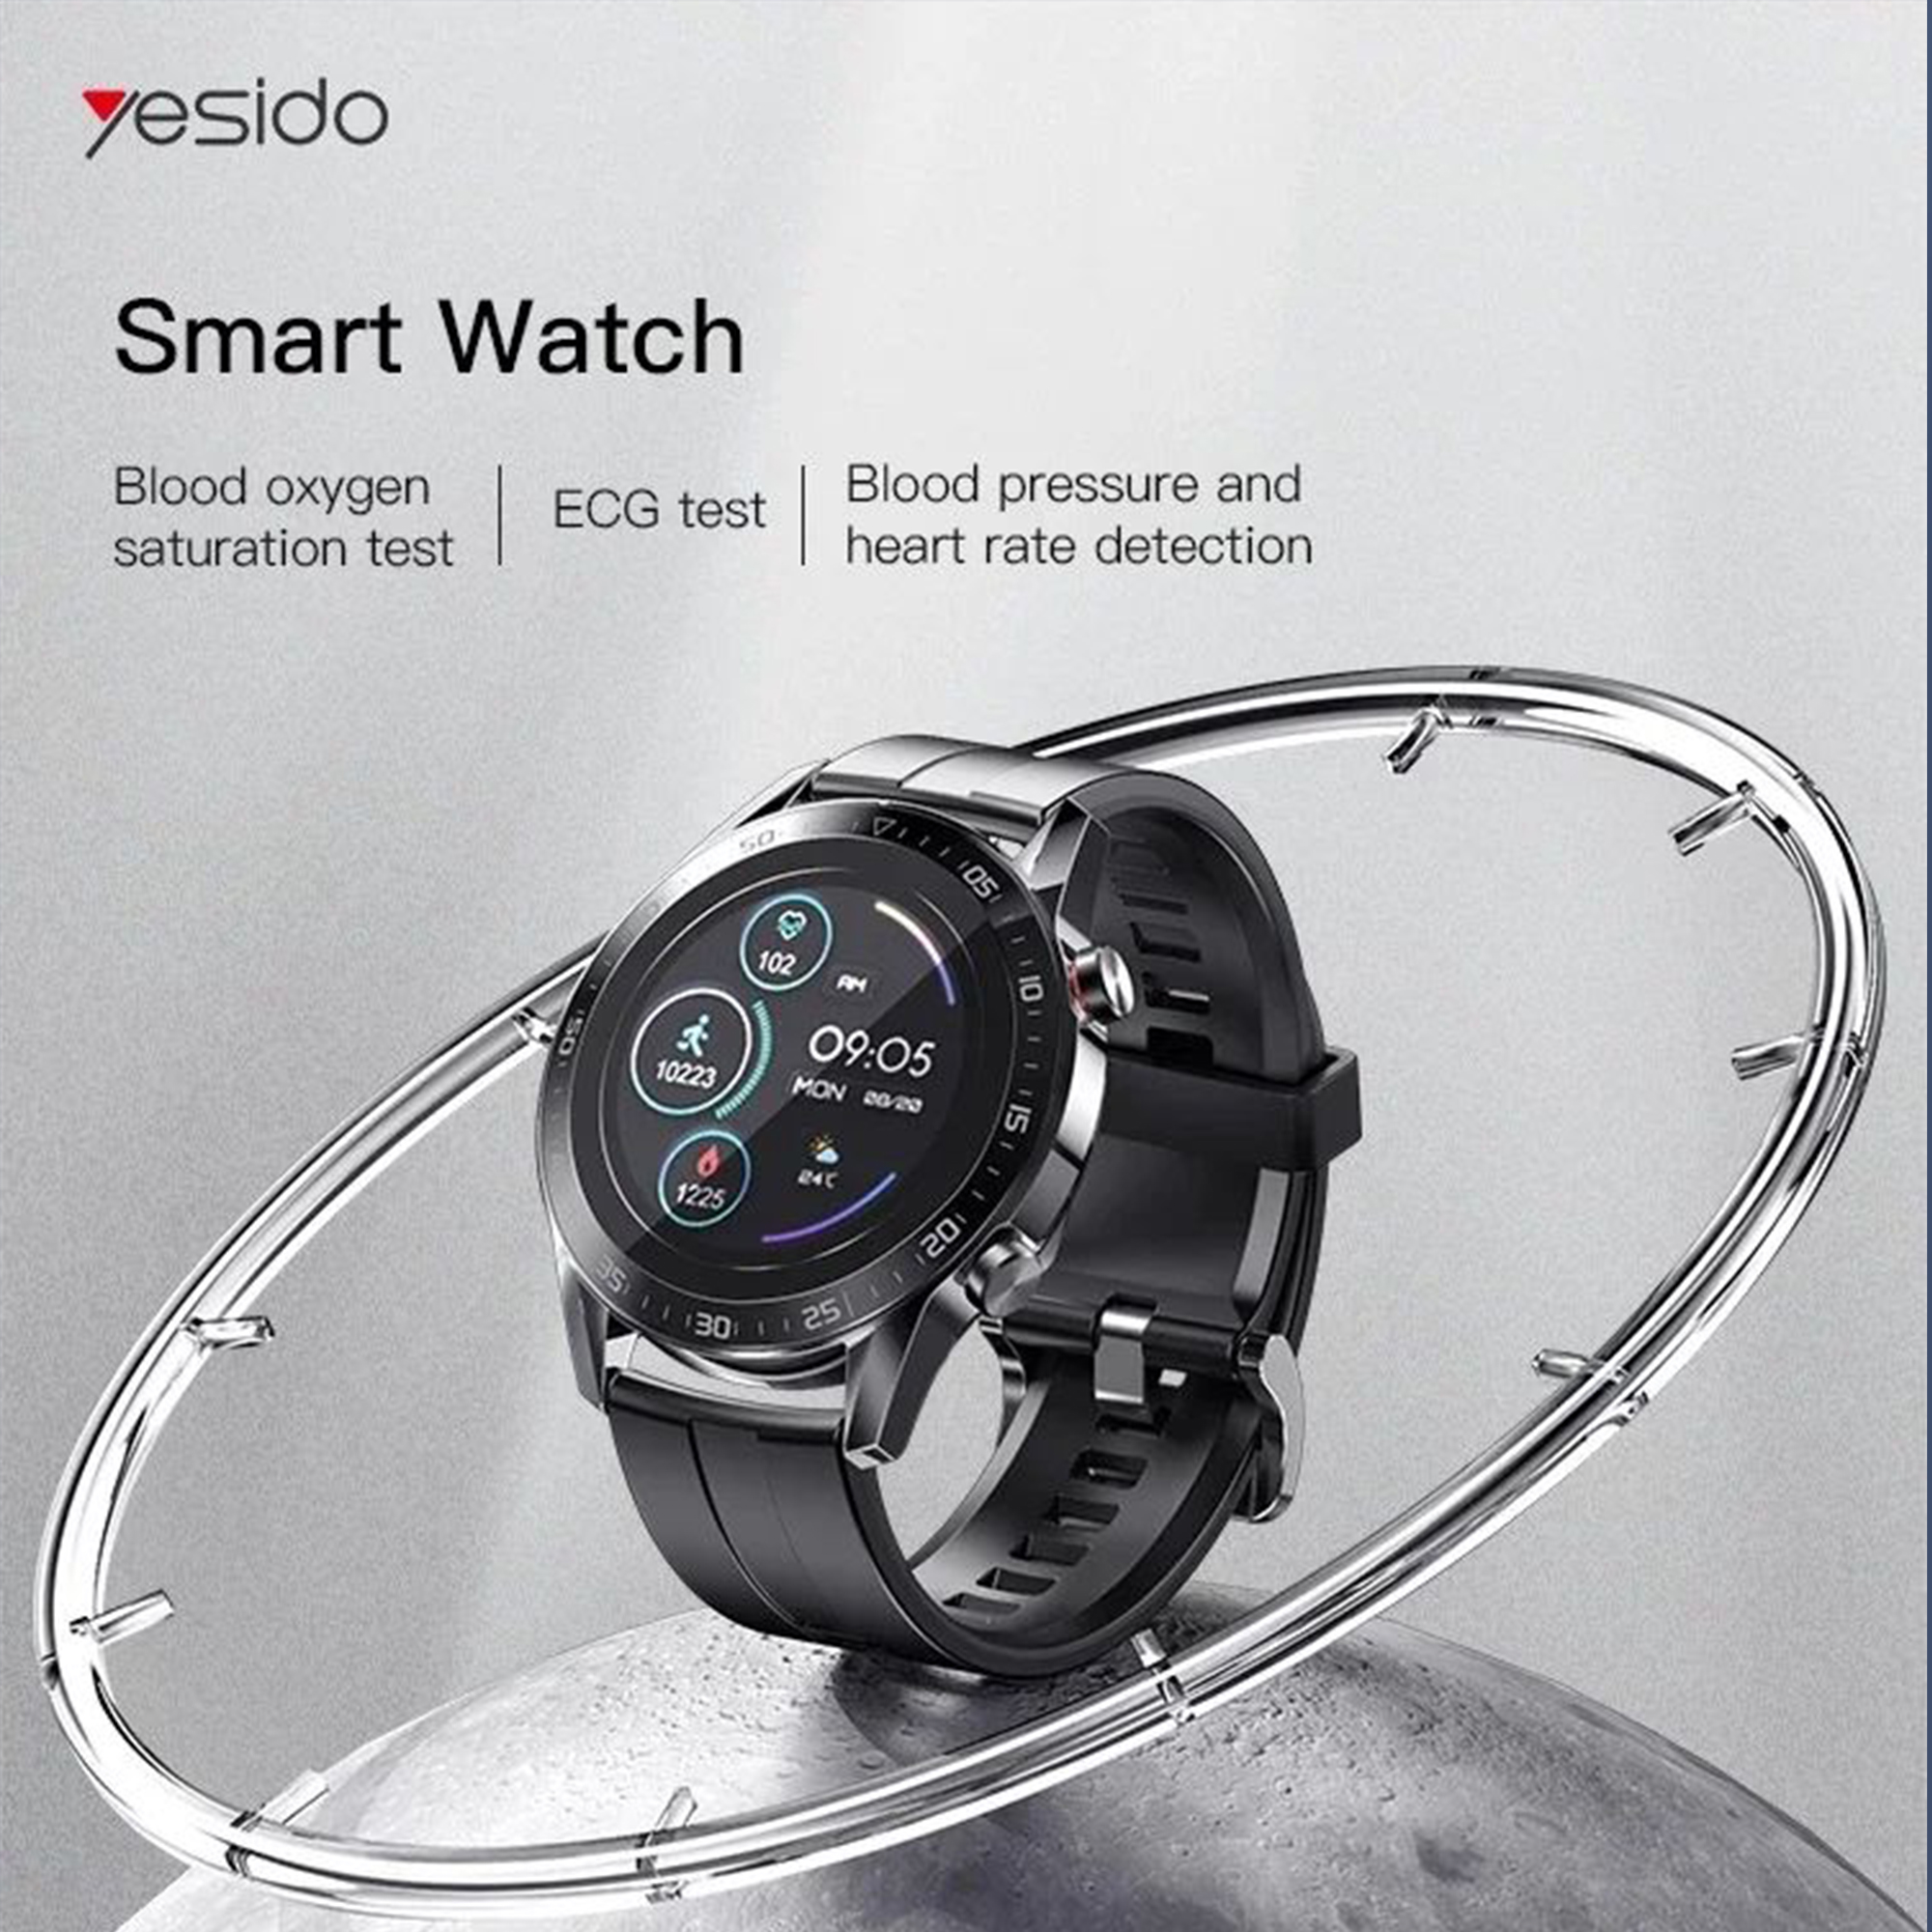 قیمت ساعت هوشمند یسیدو مدل IO10